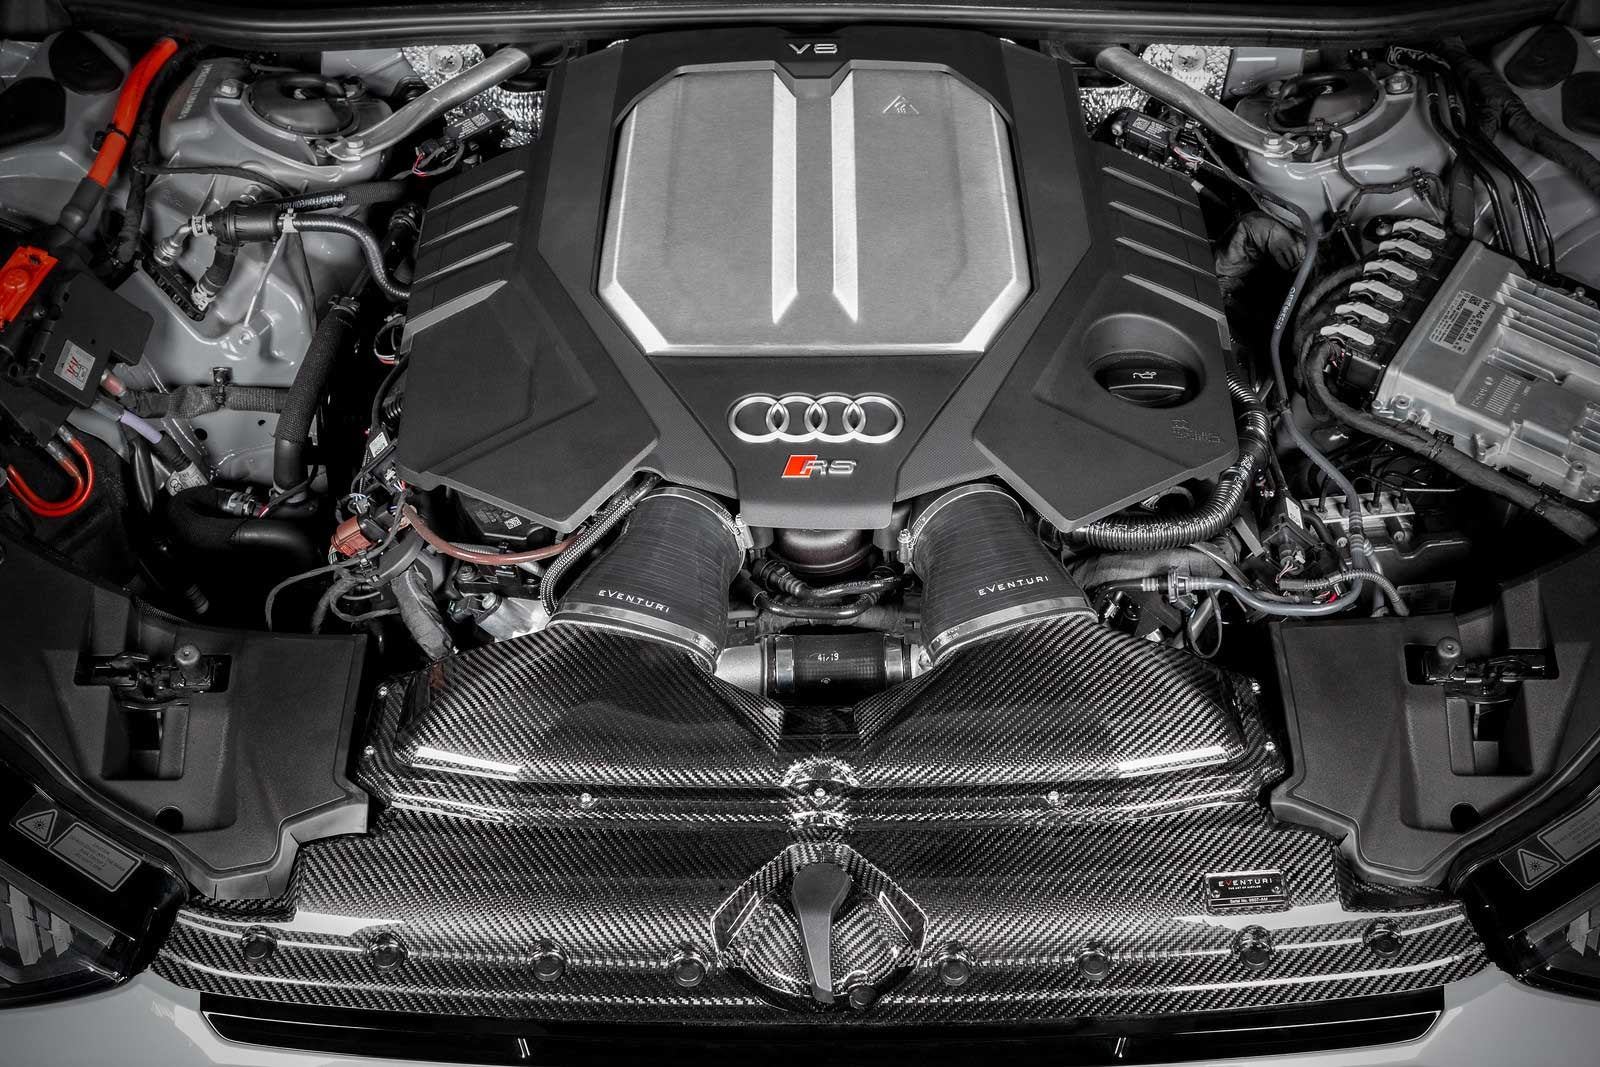 Eventuri koolstofinlaat Audi RS6 C8